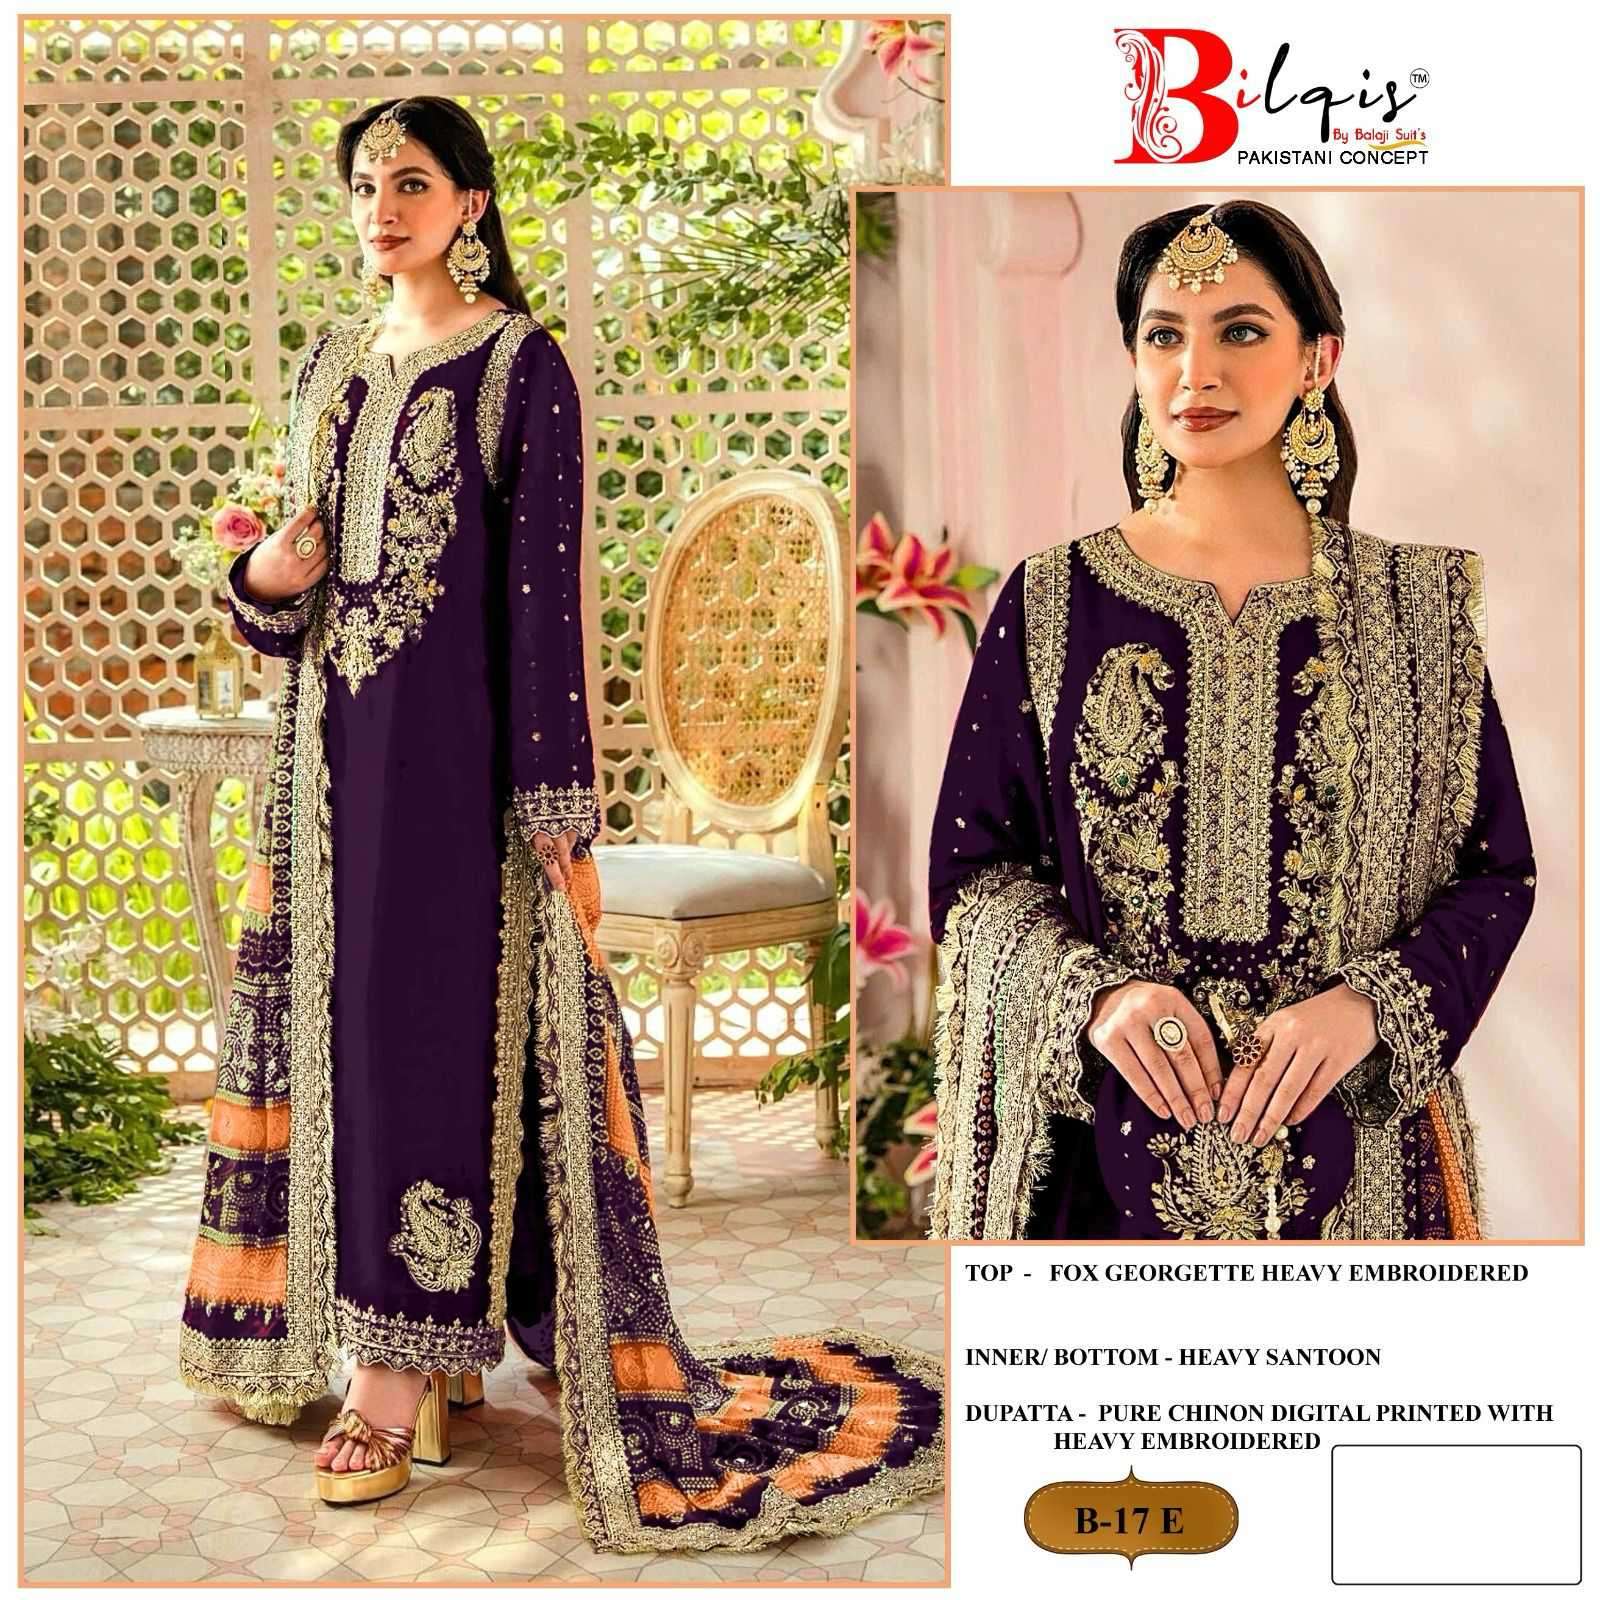 Bilqis B 17 Colors 2 Festive Wear Georgette Pakistani Suit New Designs